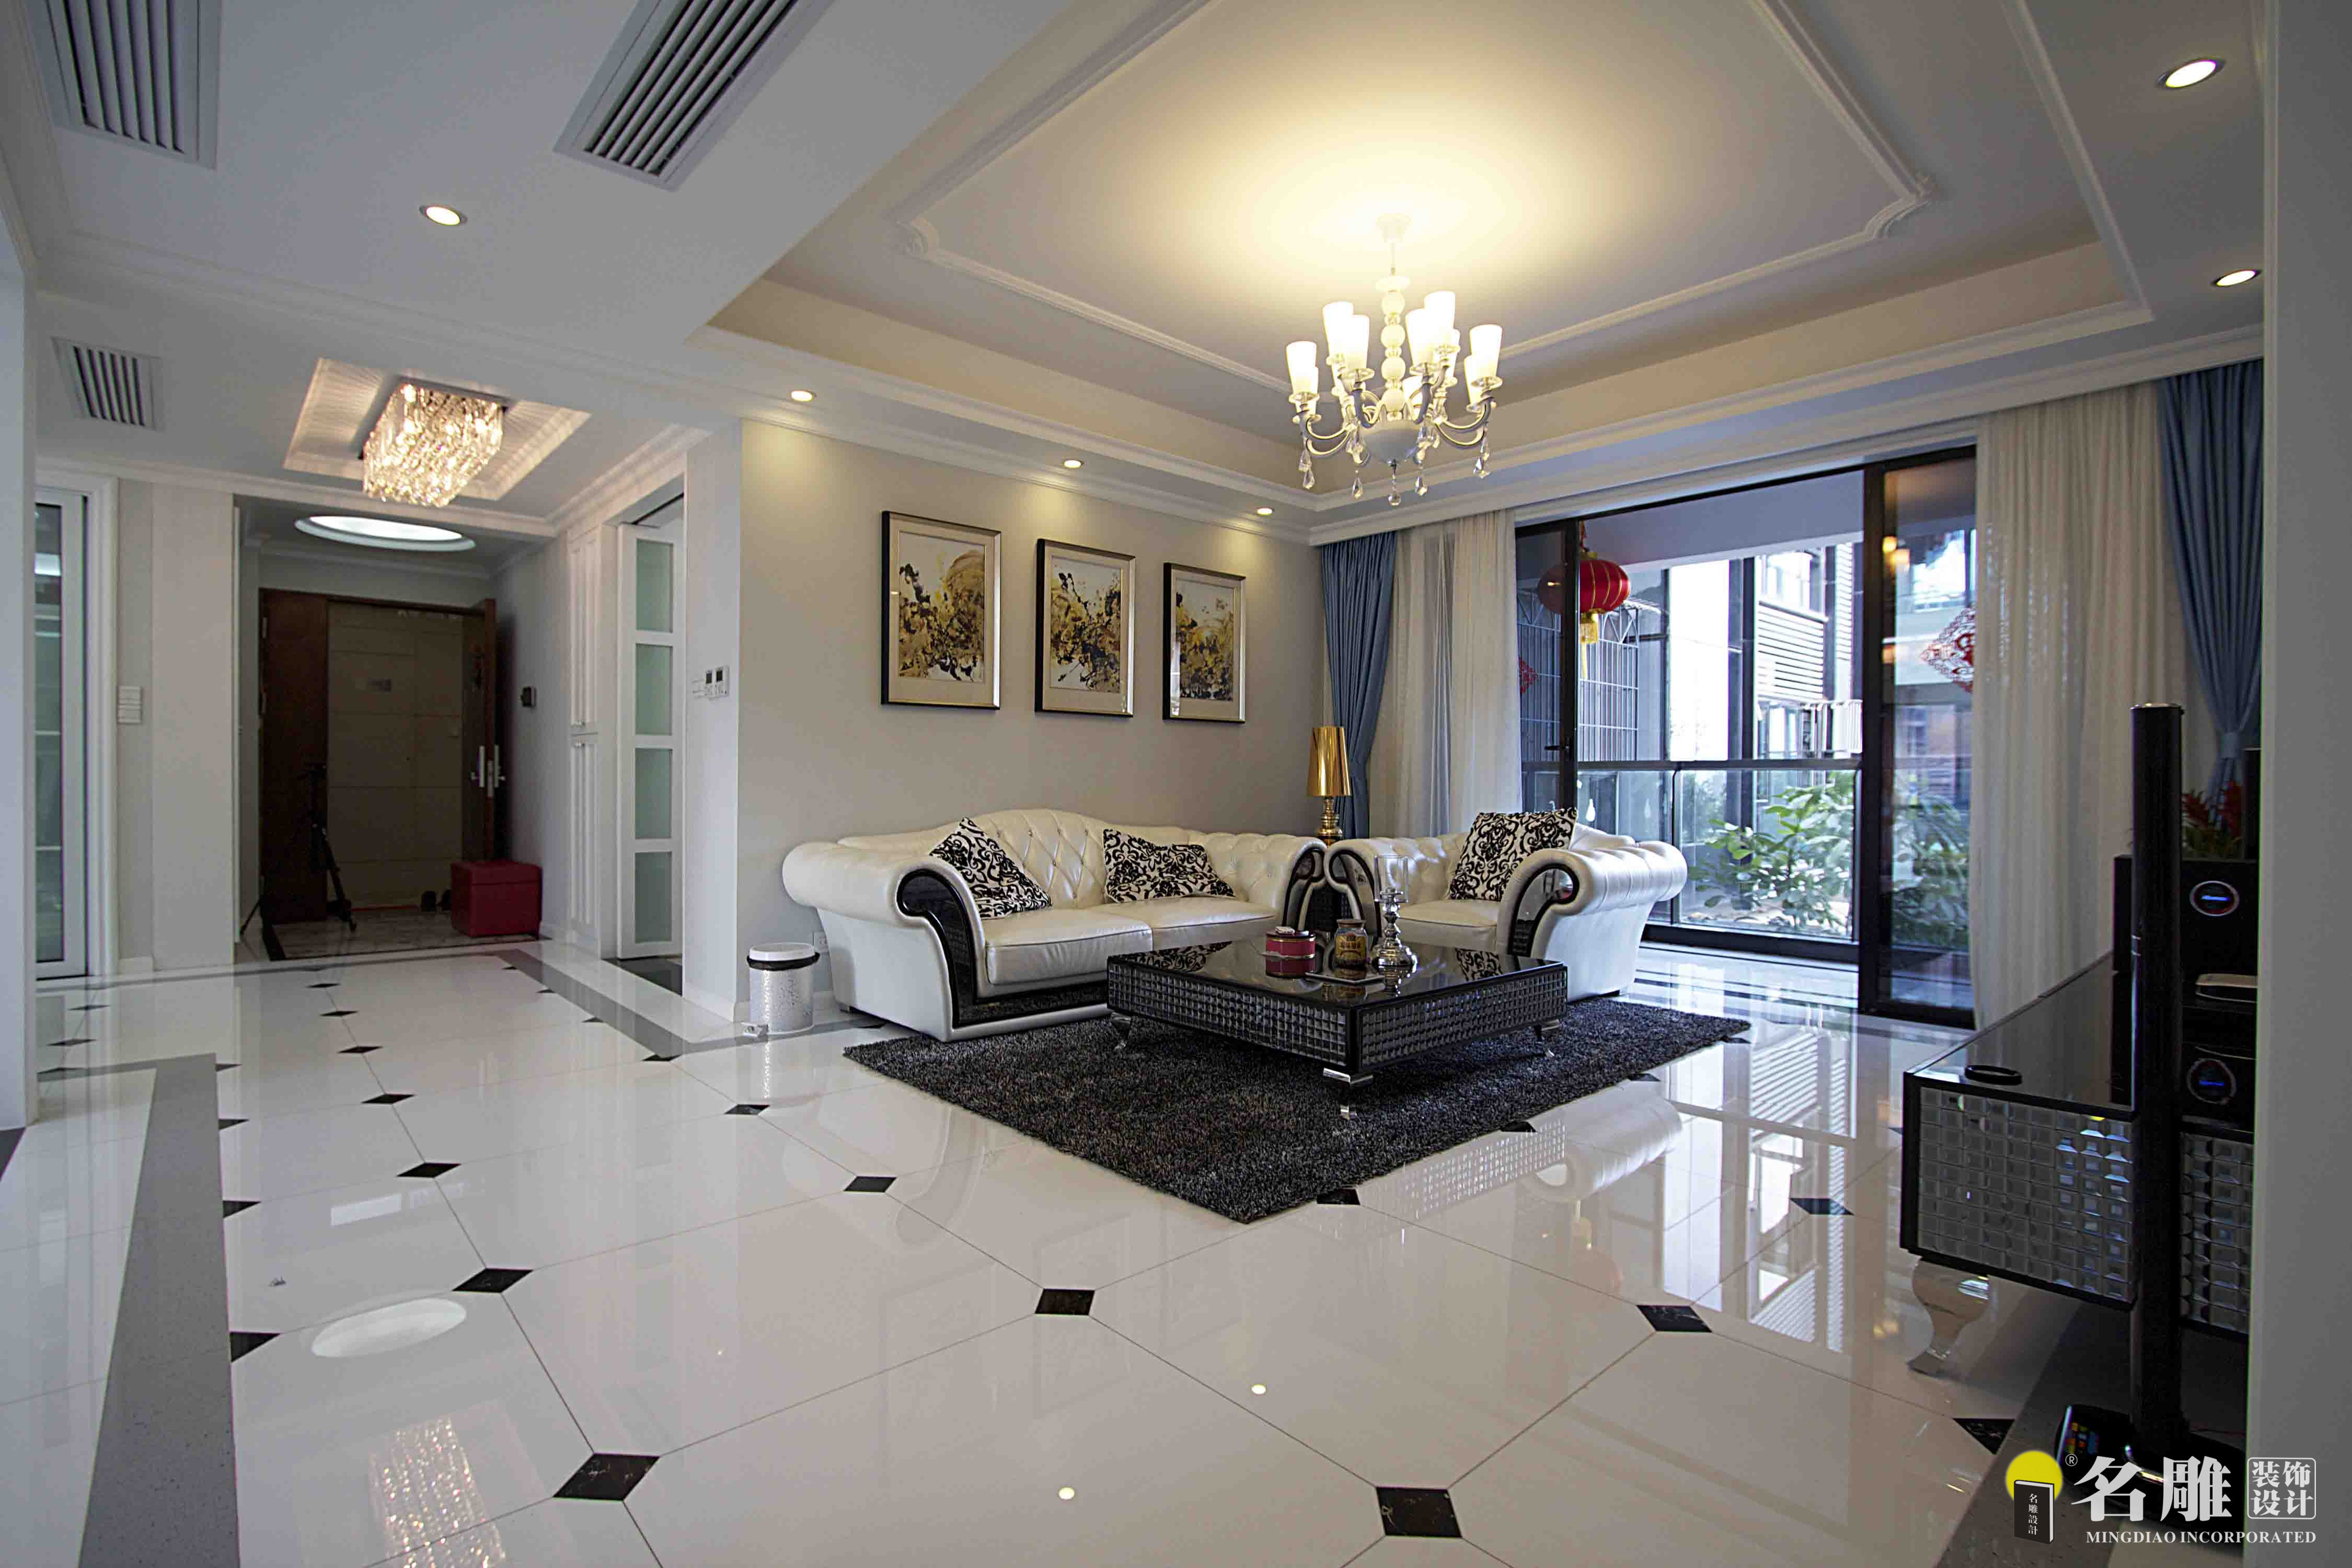 名雕装饰设计——客厅:一抹素白,绵延纯净的简爱,淡若馨香,轻如细流